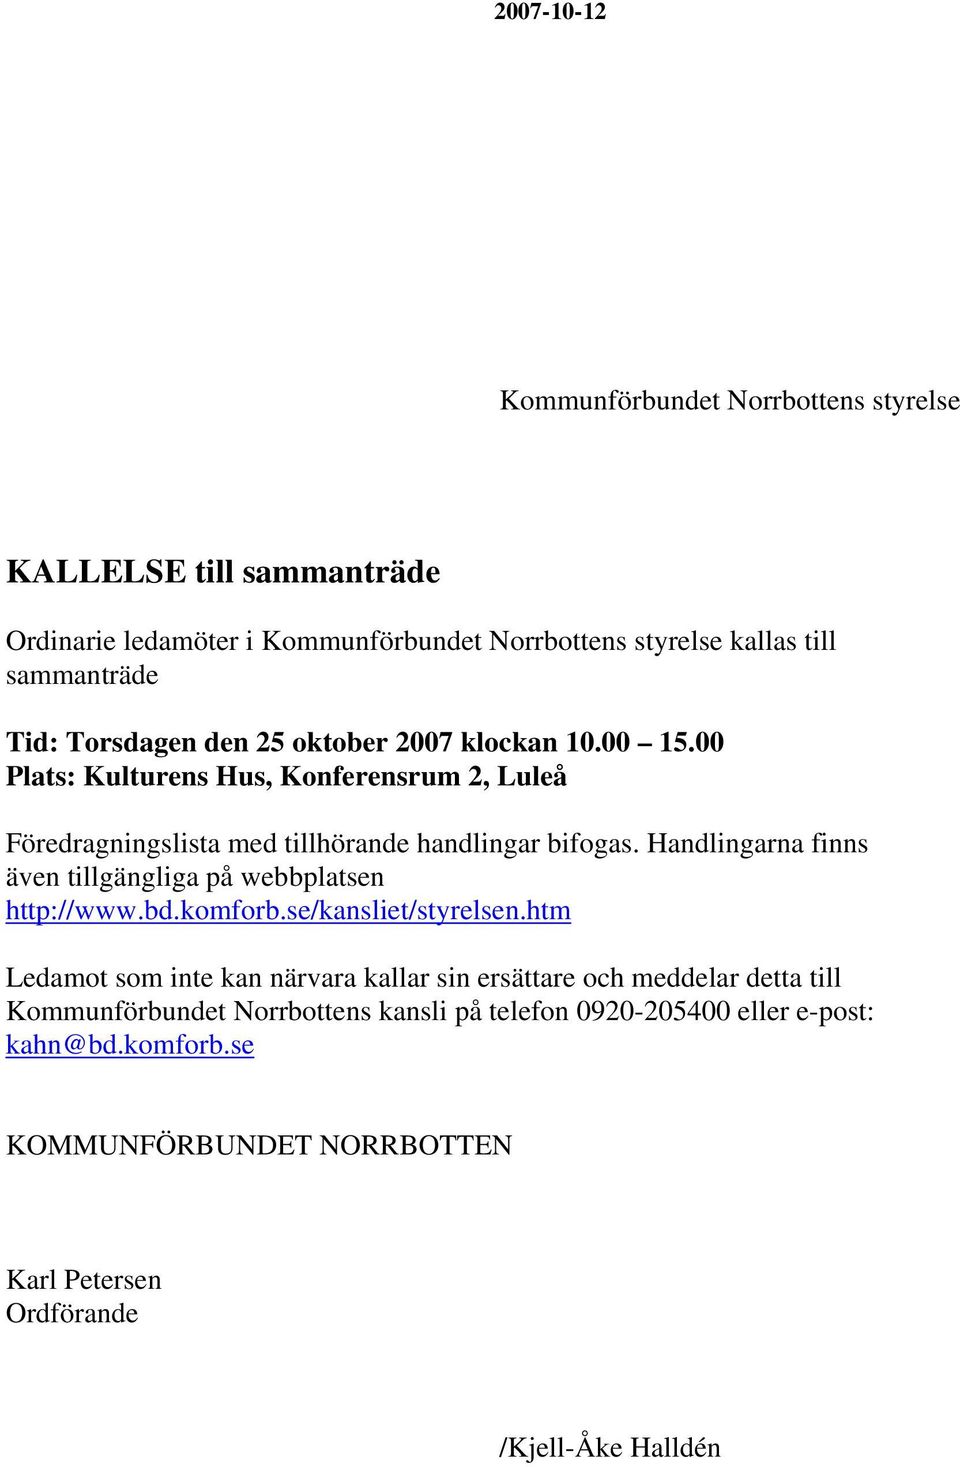 Handlingarna finns även tillgängliga på webbplatsen http://www.bd.komforb.se/kansliet/styrelsen.